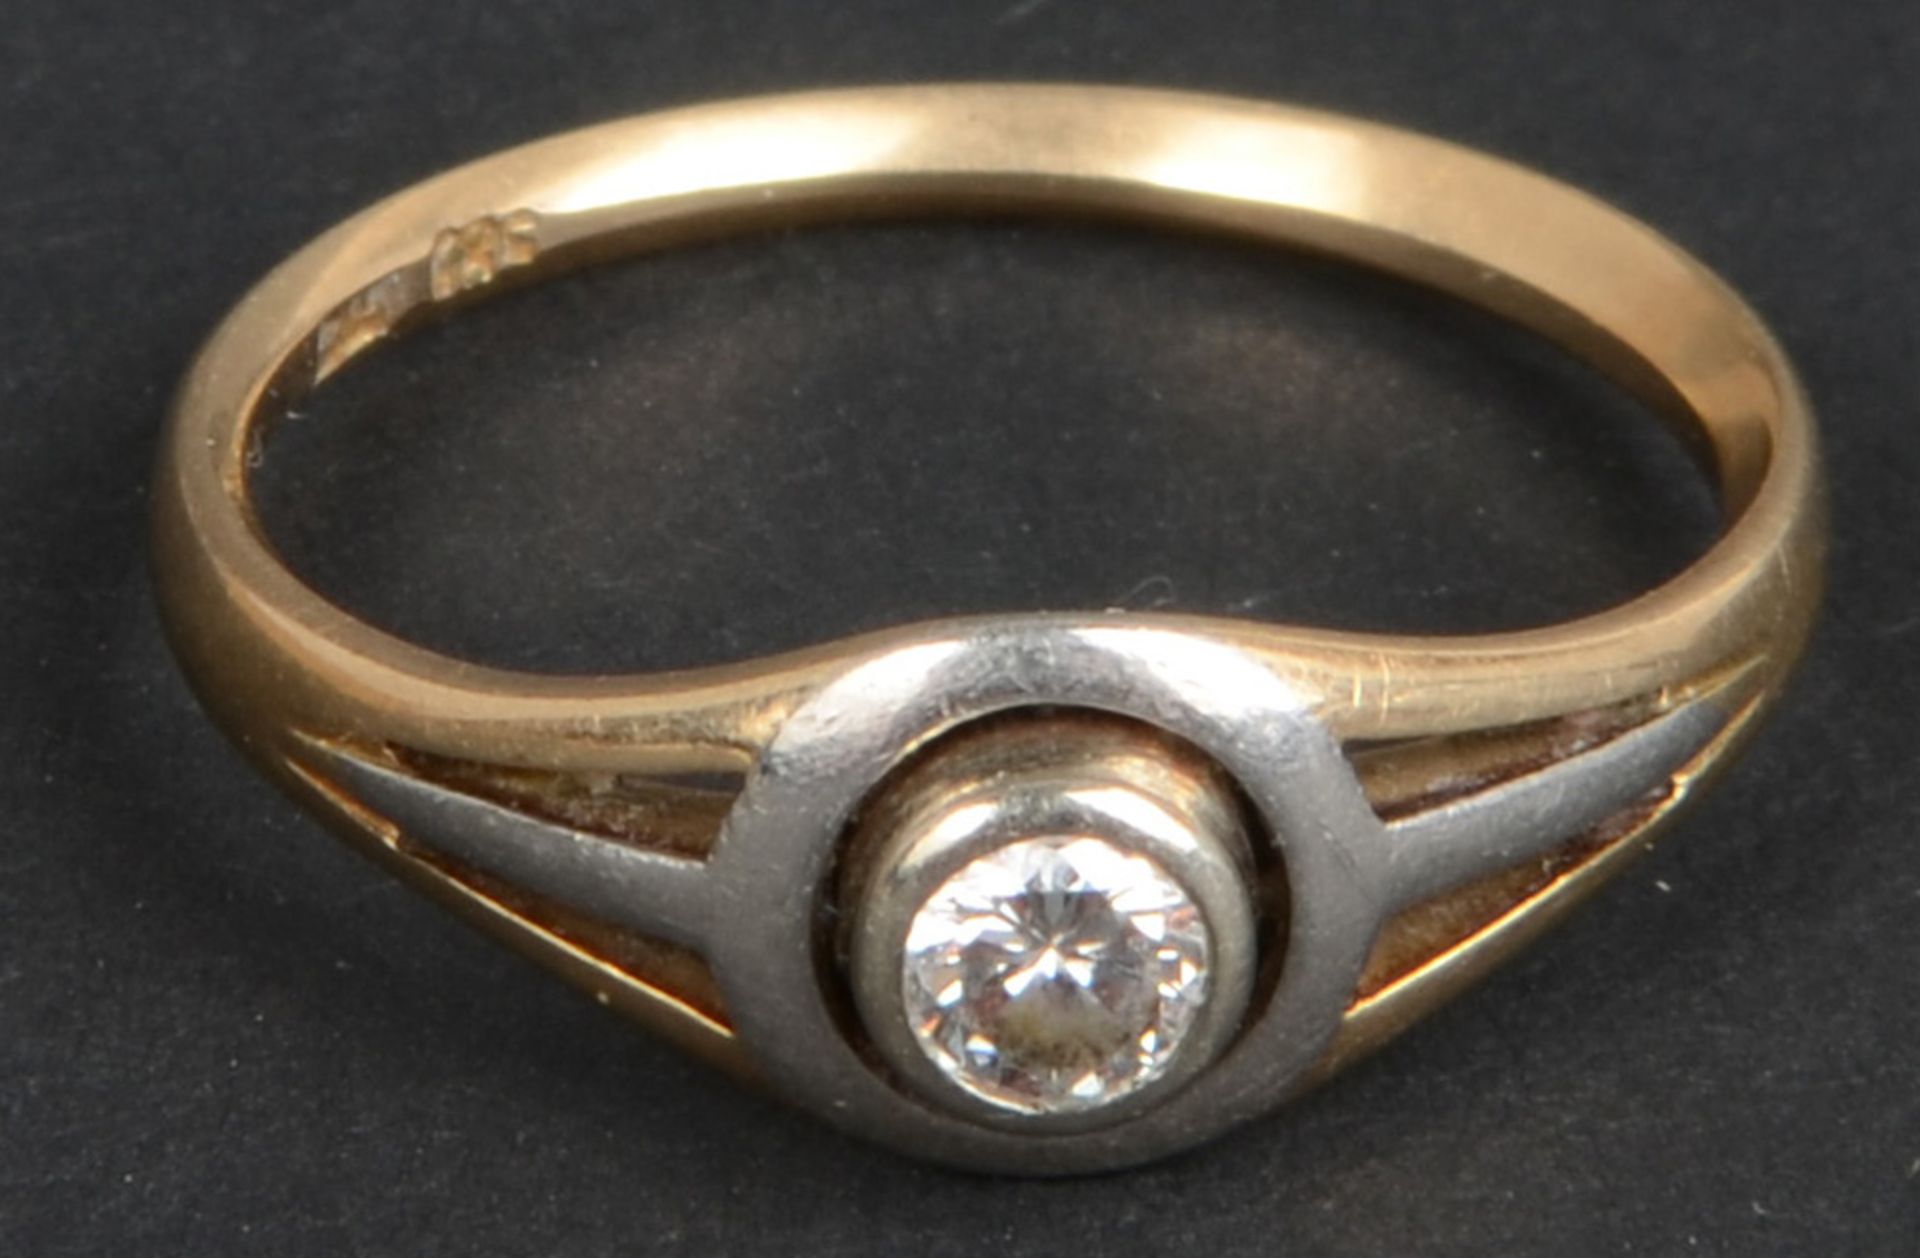 Damenring. 14 ct Gold, besetzt mit Brillant, ca. 0,15 ct, ca. 2,2 g. (Ringgröße 54)